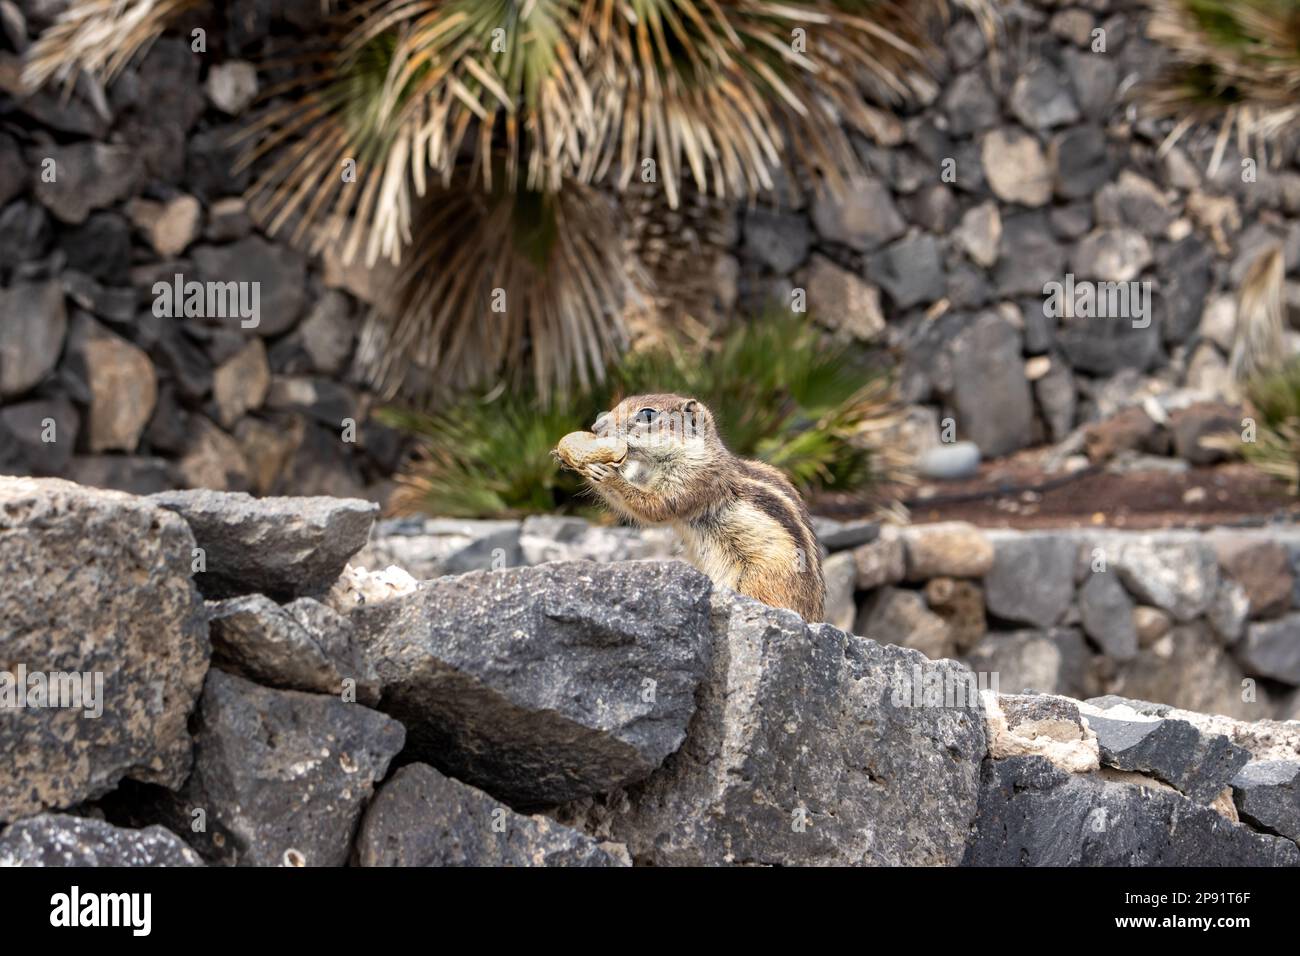 Streifenhörnchen mit Erdnuss, eine der ziemlich großen Kolonien auf der Insel. Sie erscheinen nahe an Steinmauern, wo sie ihre Nester und ein Versteck haben. Stockfoto